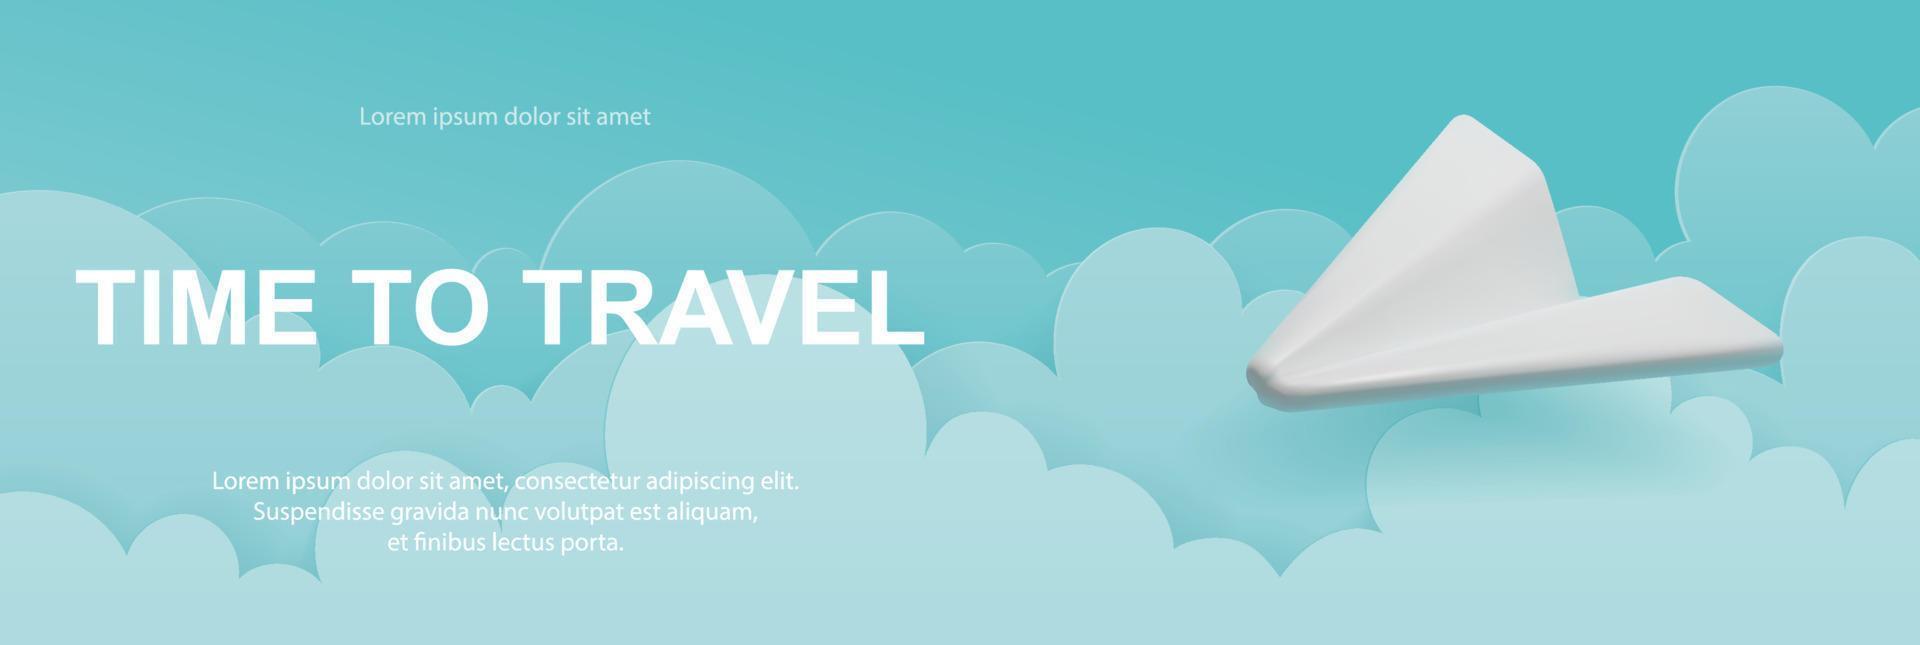 banner vetorial com um avião no céu com nuvens. design 3d realista e corte de papel. conceito de férias, hora de viajar vetor